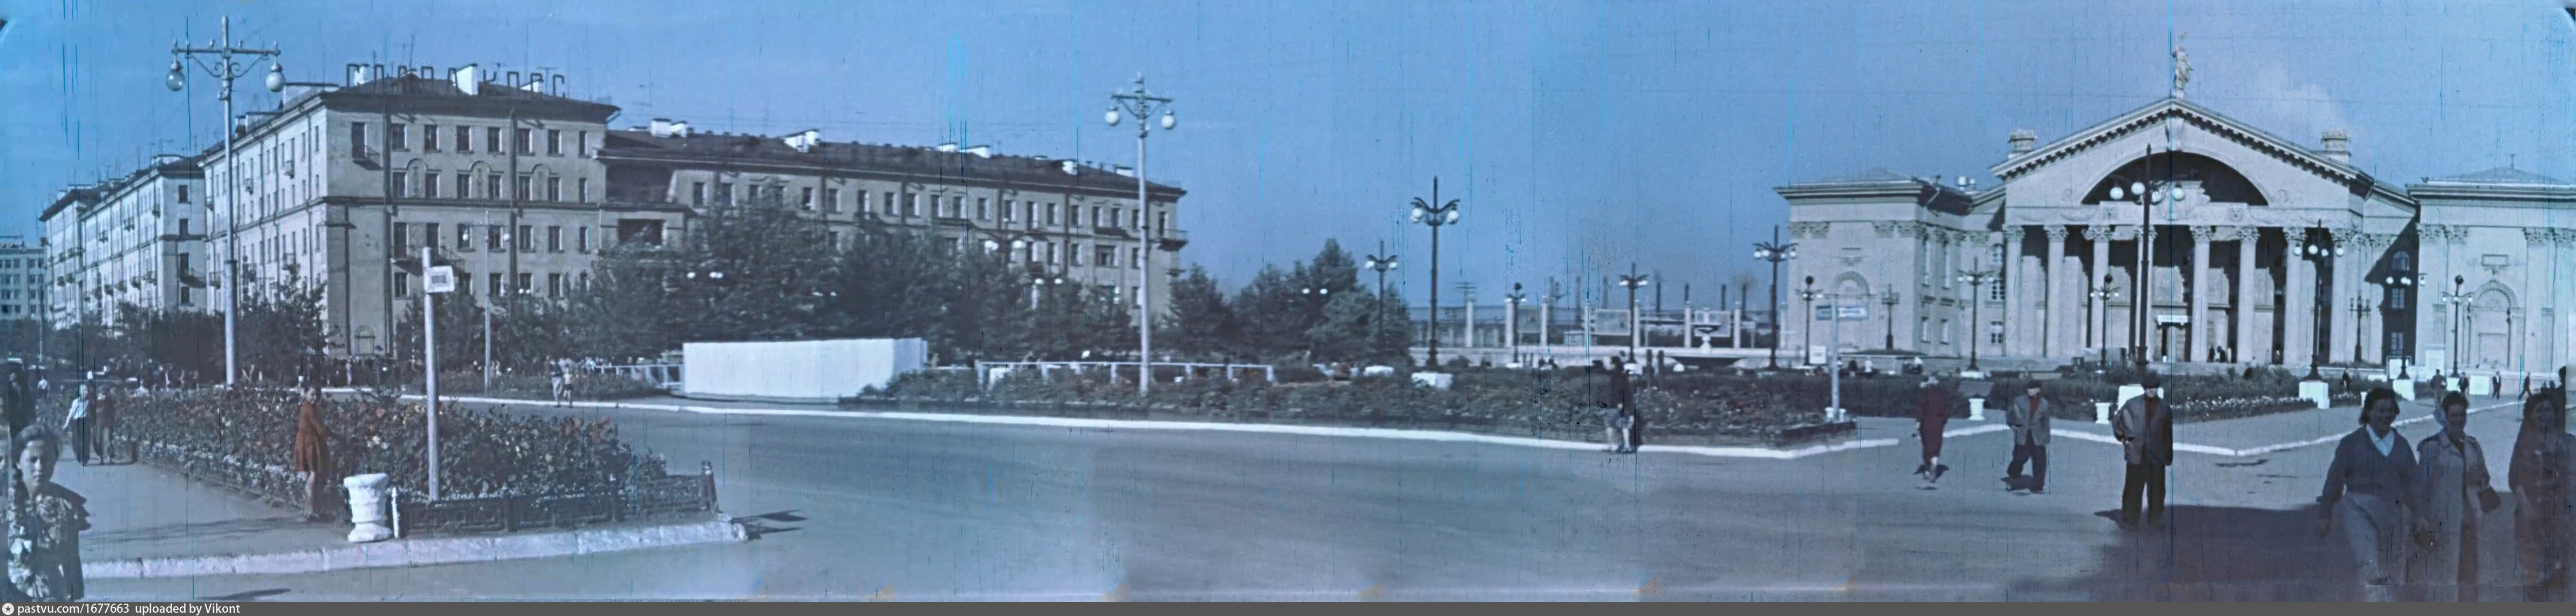 челябинск металлургический район 1972 год фотографии